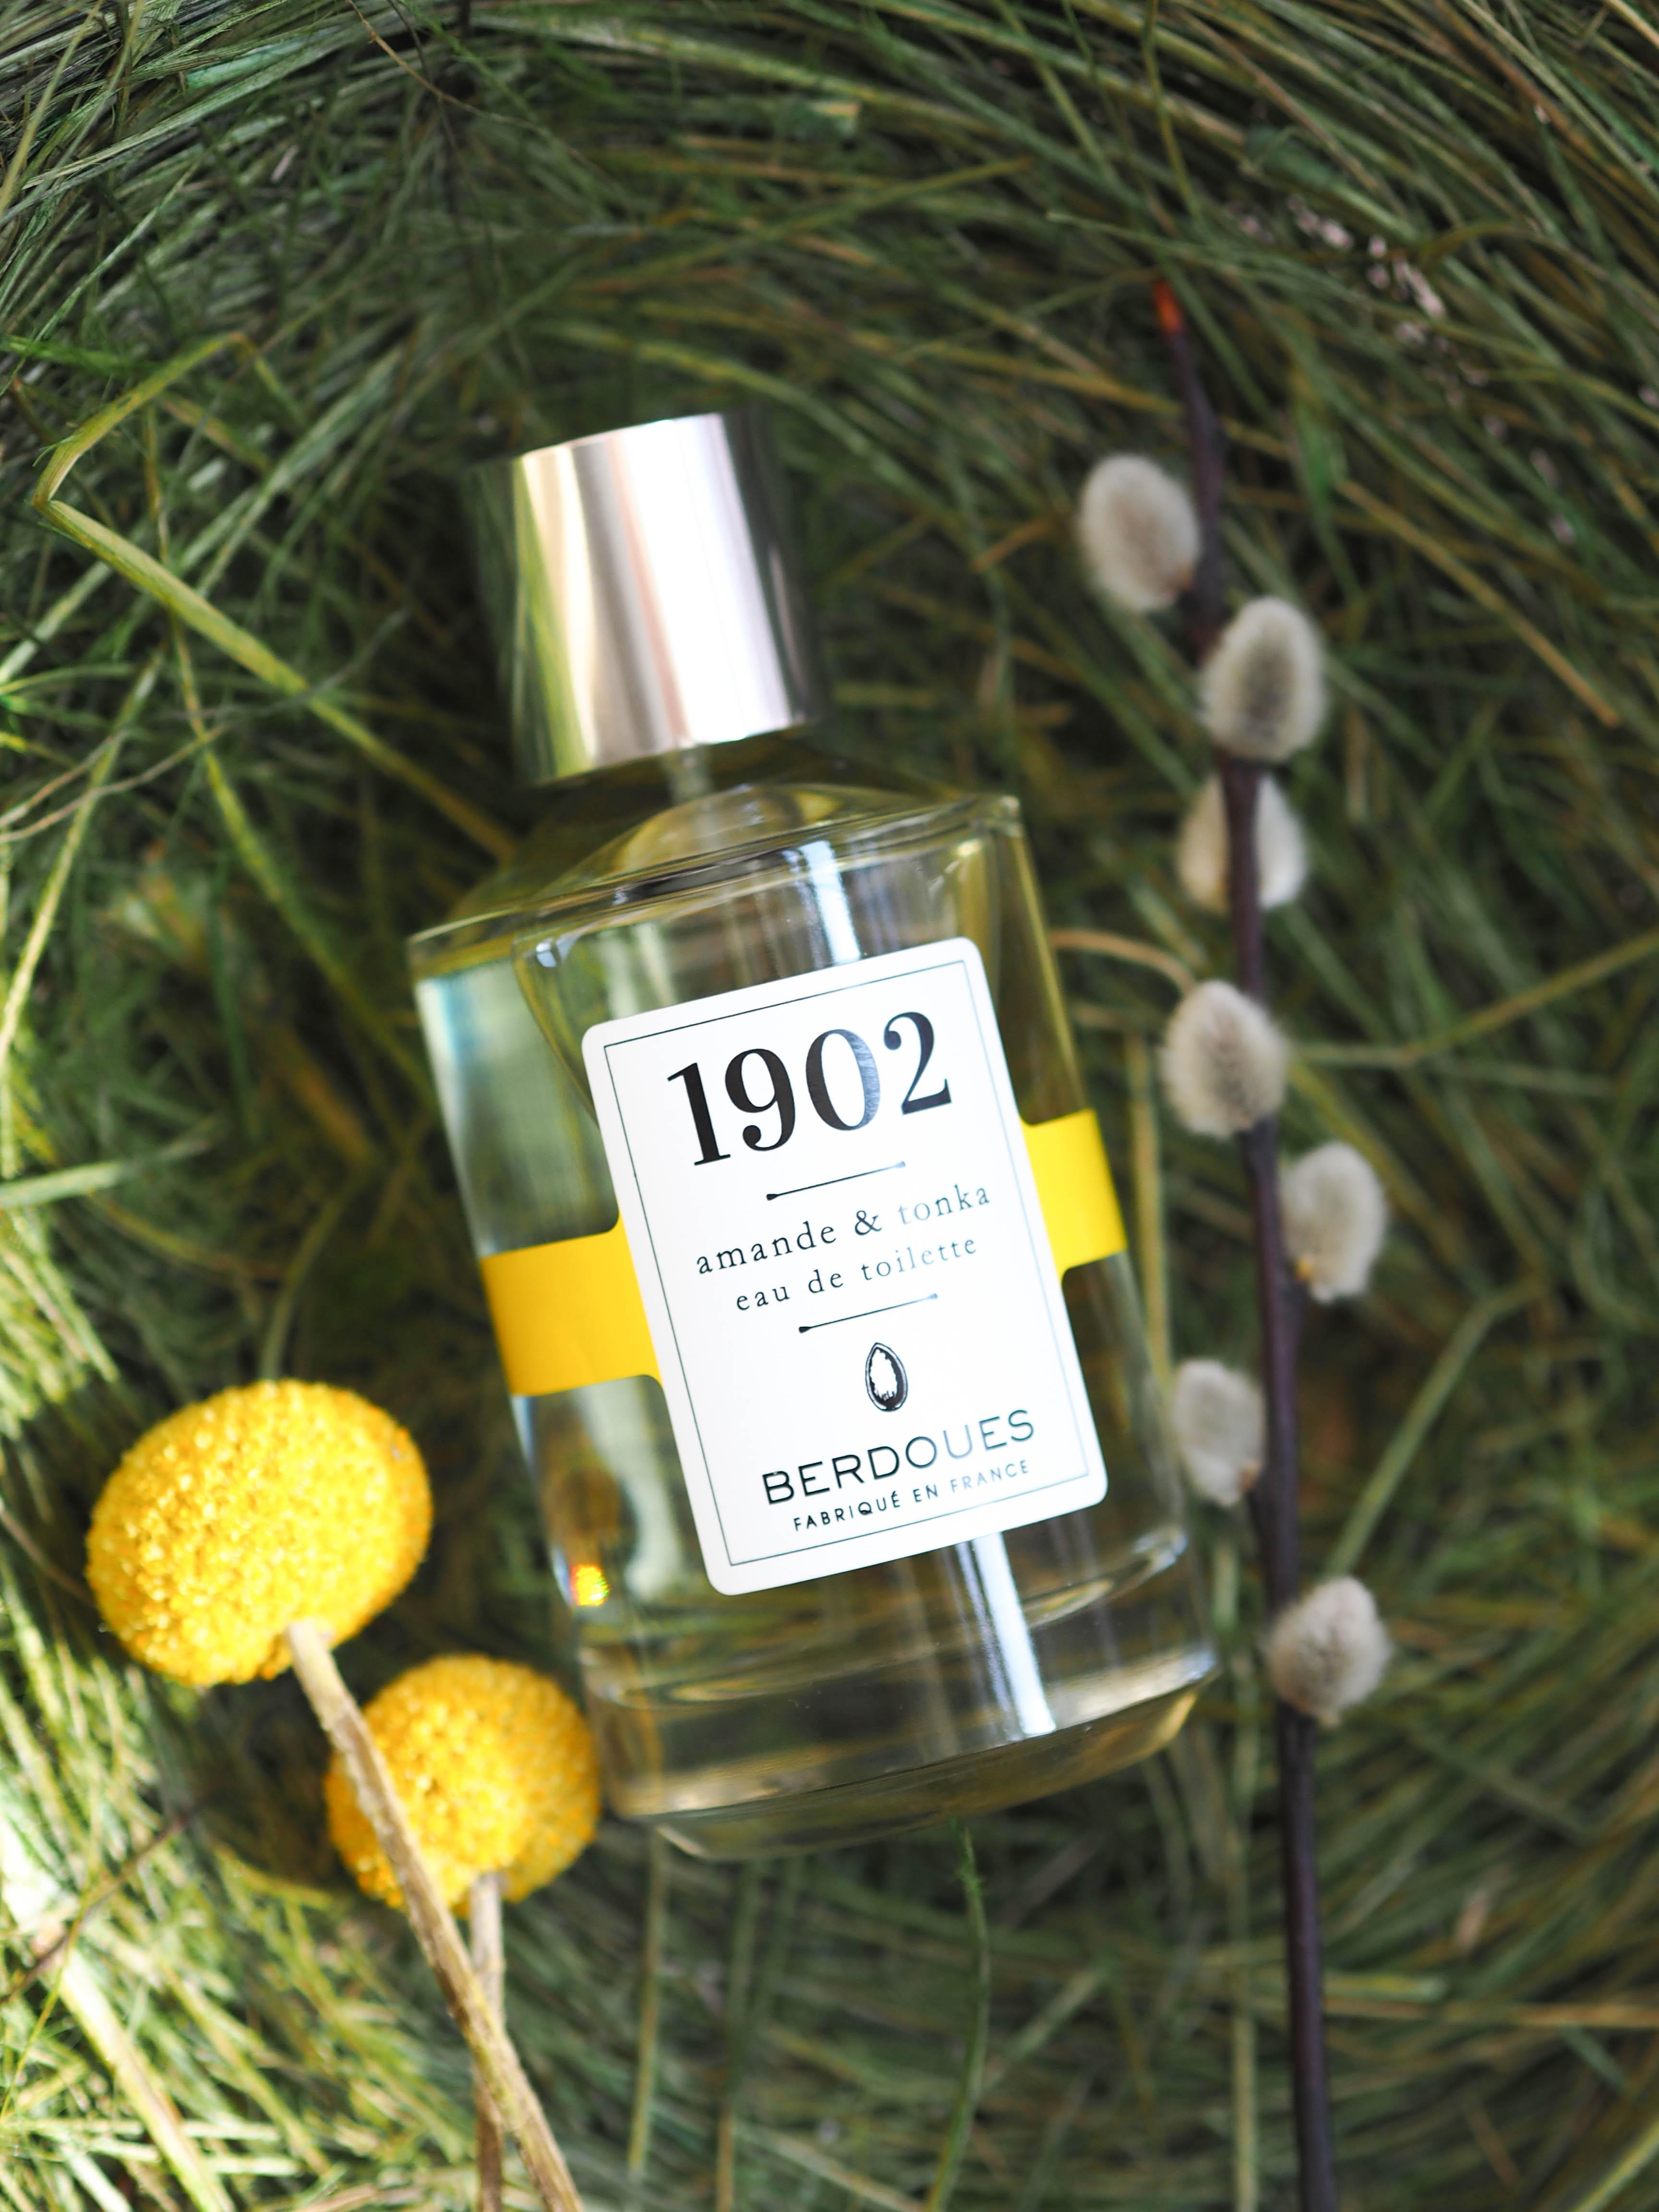 Parfüm geht immer: Seit 1902 stellt das Familienunternehmen Berdoues die herrlichen Düfte her #beautylieblinge #berdoues